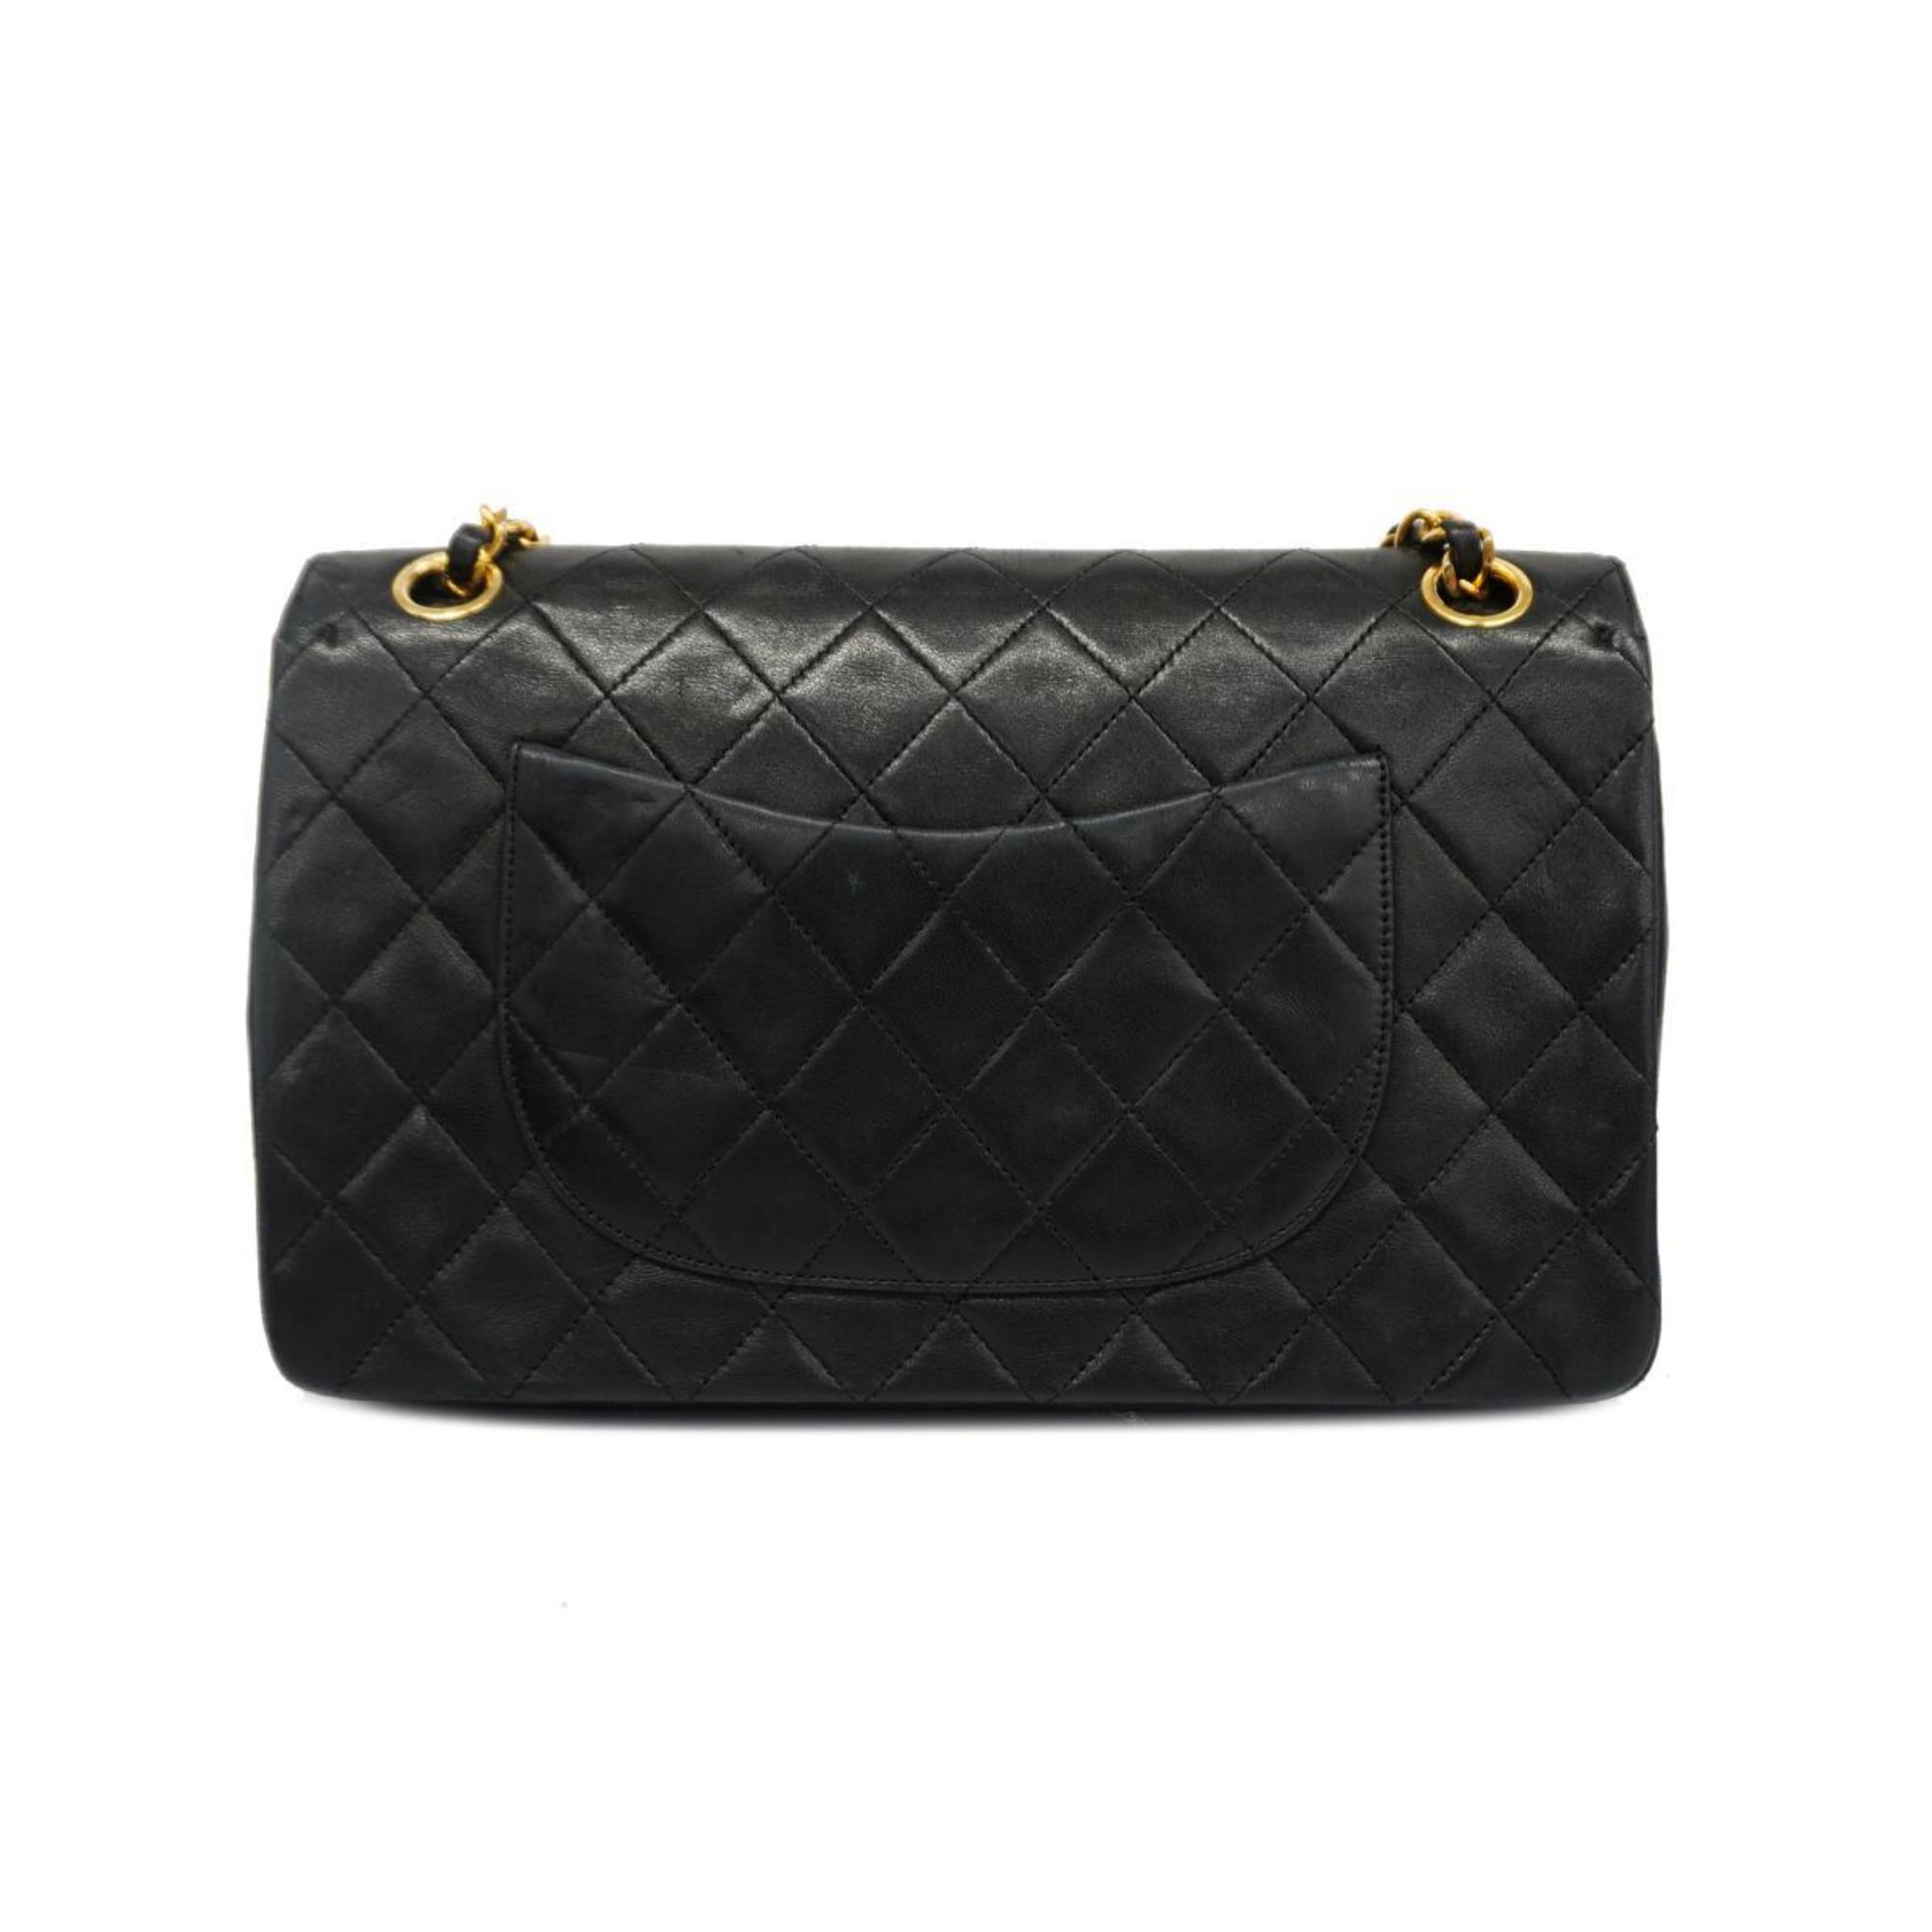 Chanel Shoulder Bag Matelasse W Flap Chain Lambskin Black Women's